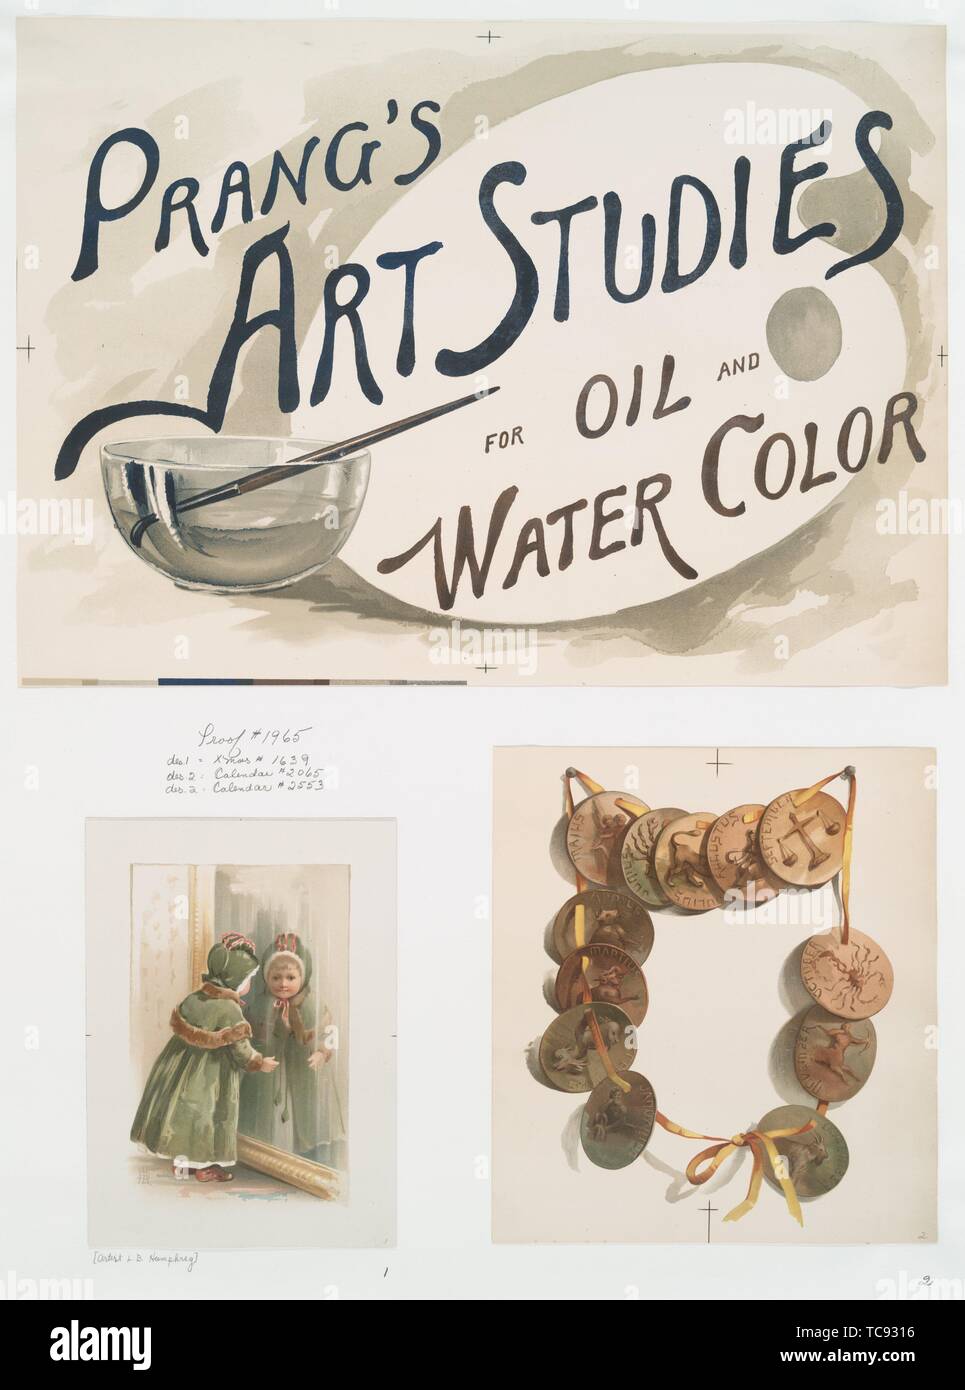 Calendario, tarjeta de Navidad y un cartel con las palabras 'prang estudios  de arte para el aceite y el agua color'; representando una chica busca en  un espejo, una cadena de Fotografía